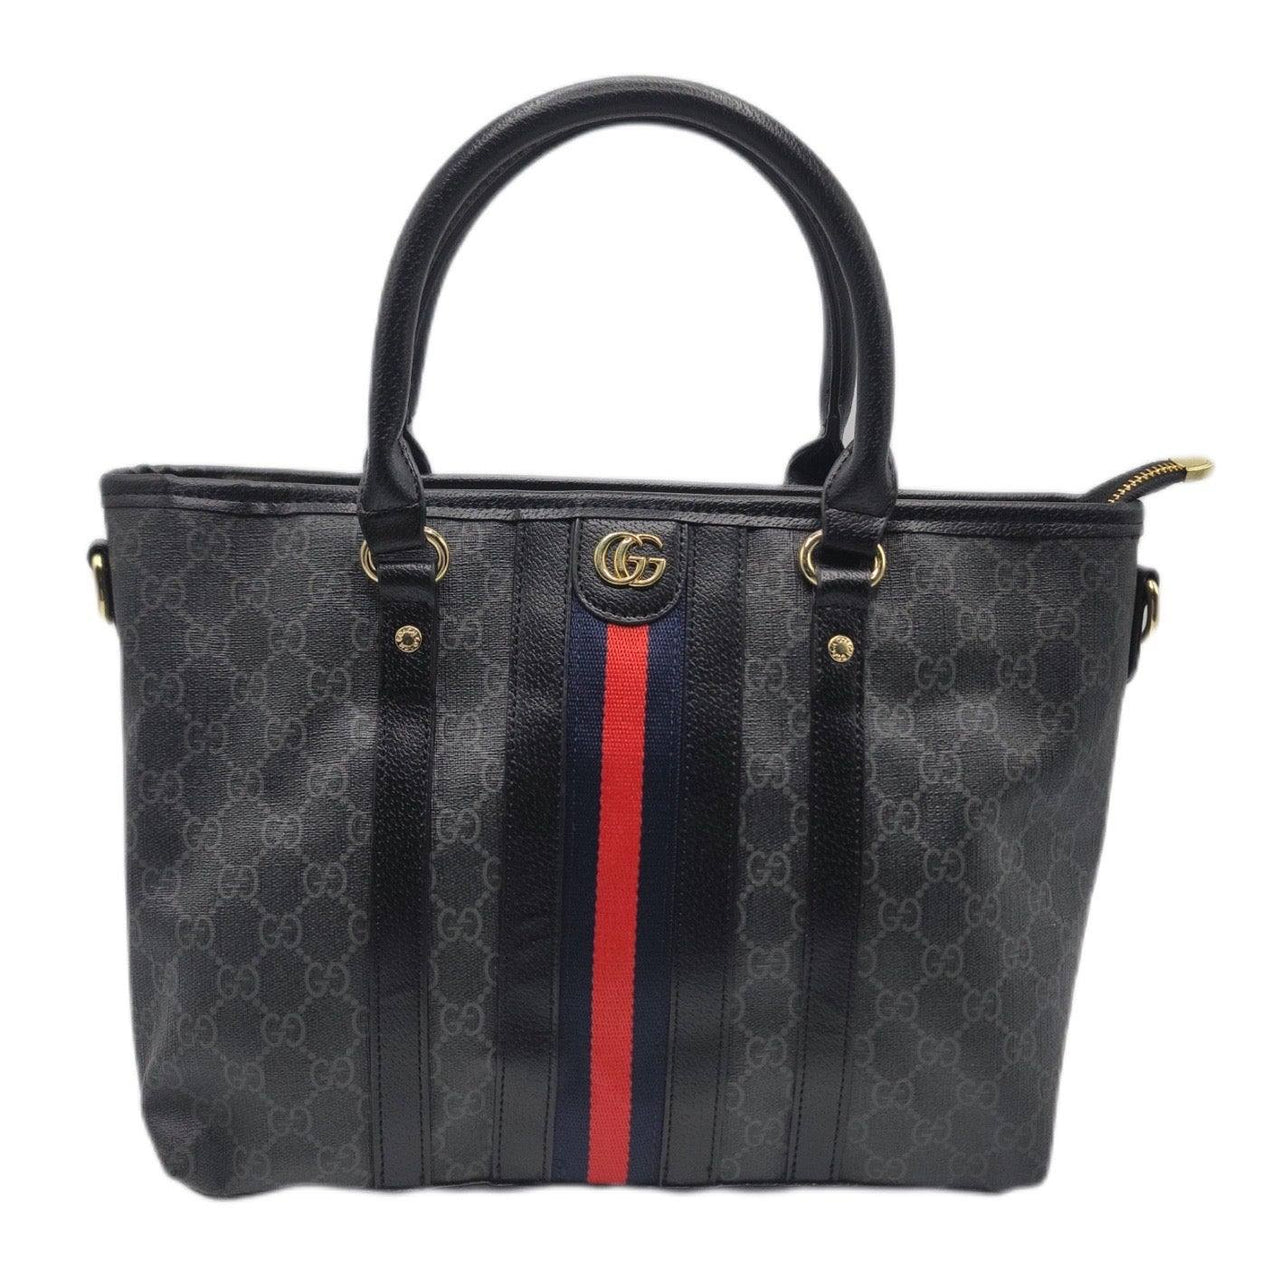 The Bag Couture Handbags, Wallets & Cases Gucci Handbag Classic Tote Black 2